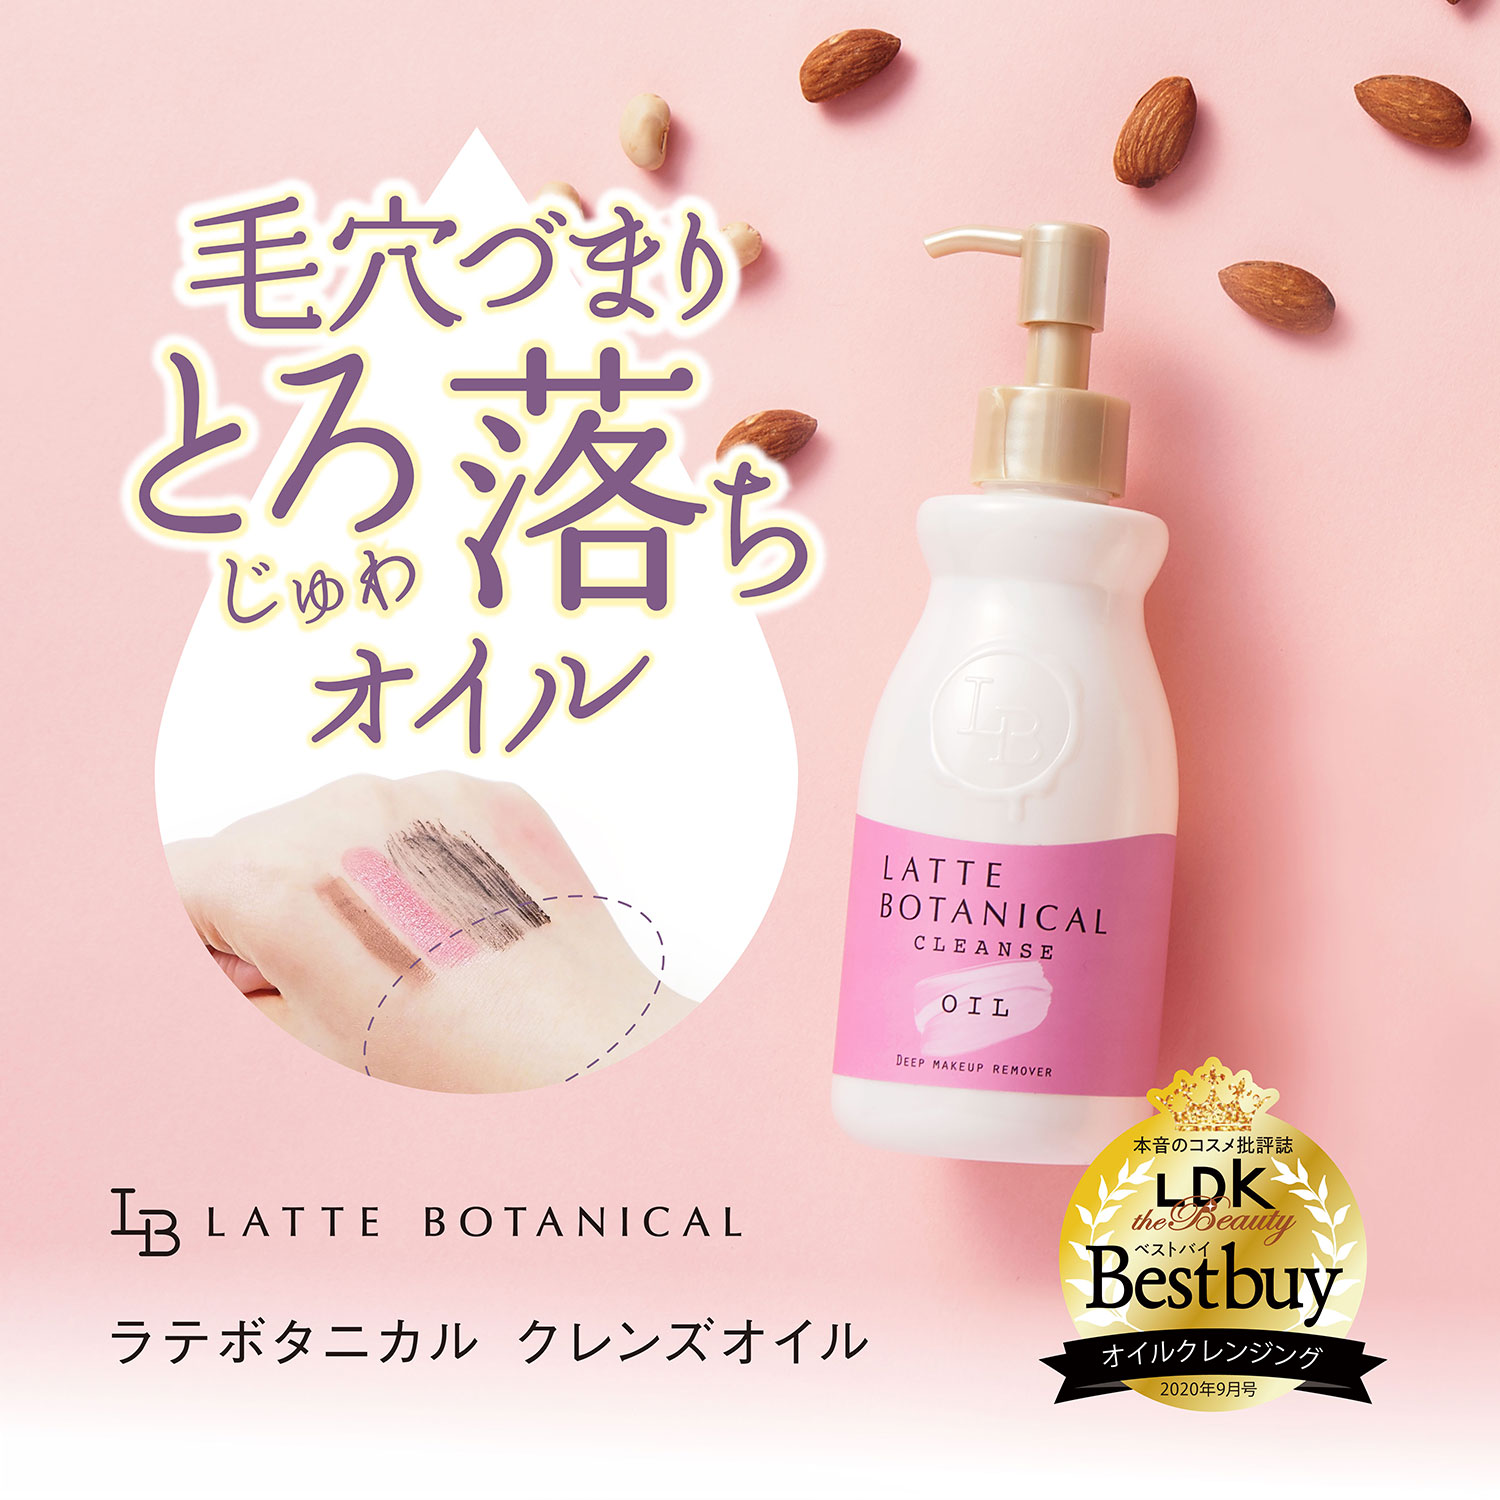 ラテボタニカル クレンズオイル 180mL latte botanical LDK the beauty Bestbuy ベストバイ受賞 毛穴 くすみ 角質ケア クレンジングオイル メイク落とし リムーバー 高保湿 ウォータープルーフ まつエク